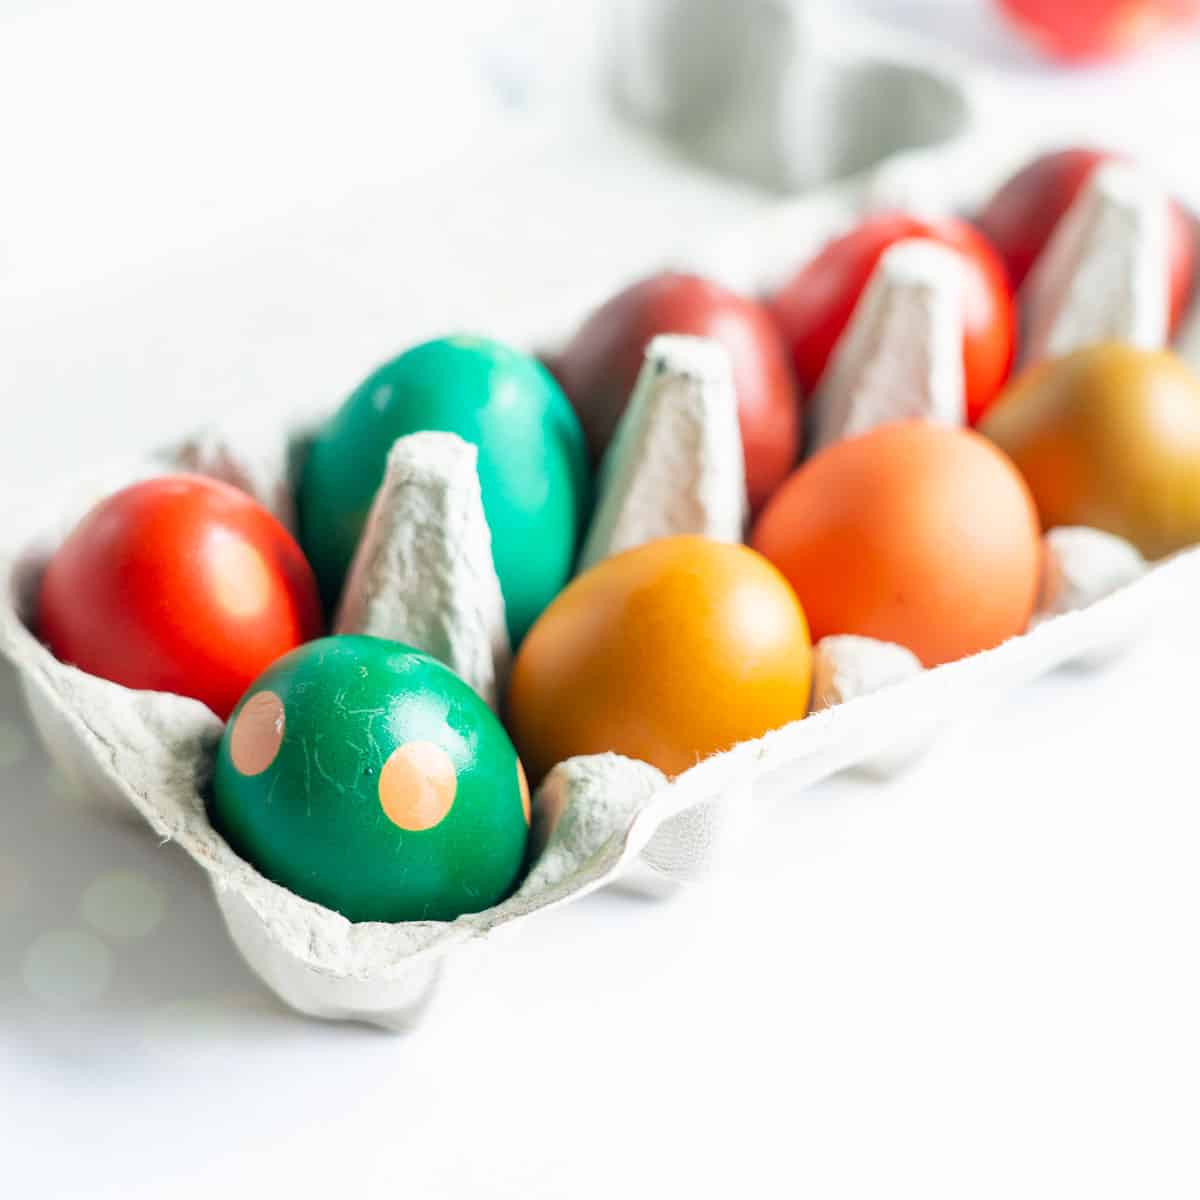 Coloured eggs in an egg carton on a white bench top.